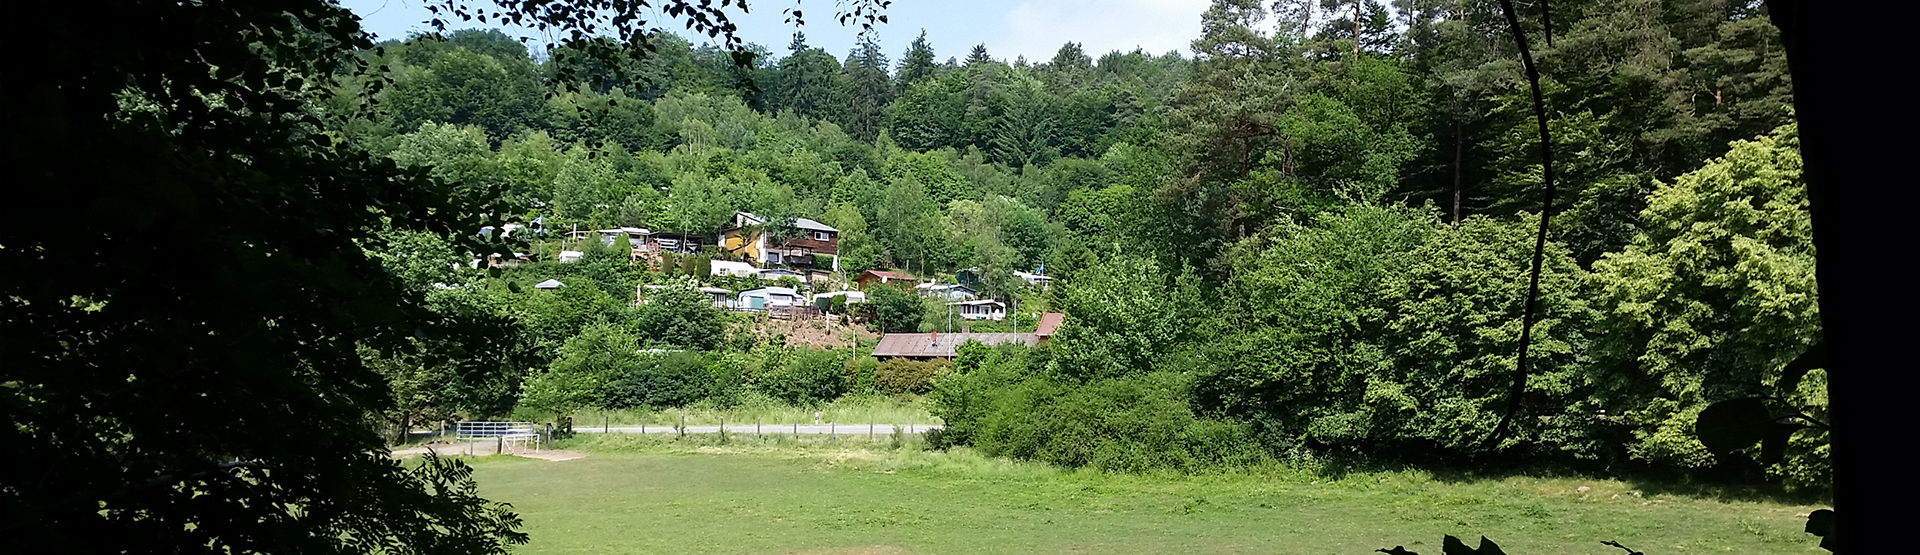 Campingplatz Gänsedell